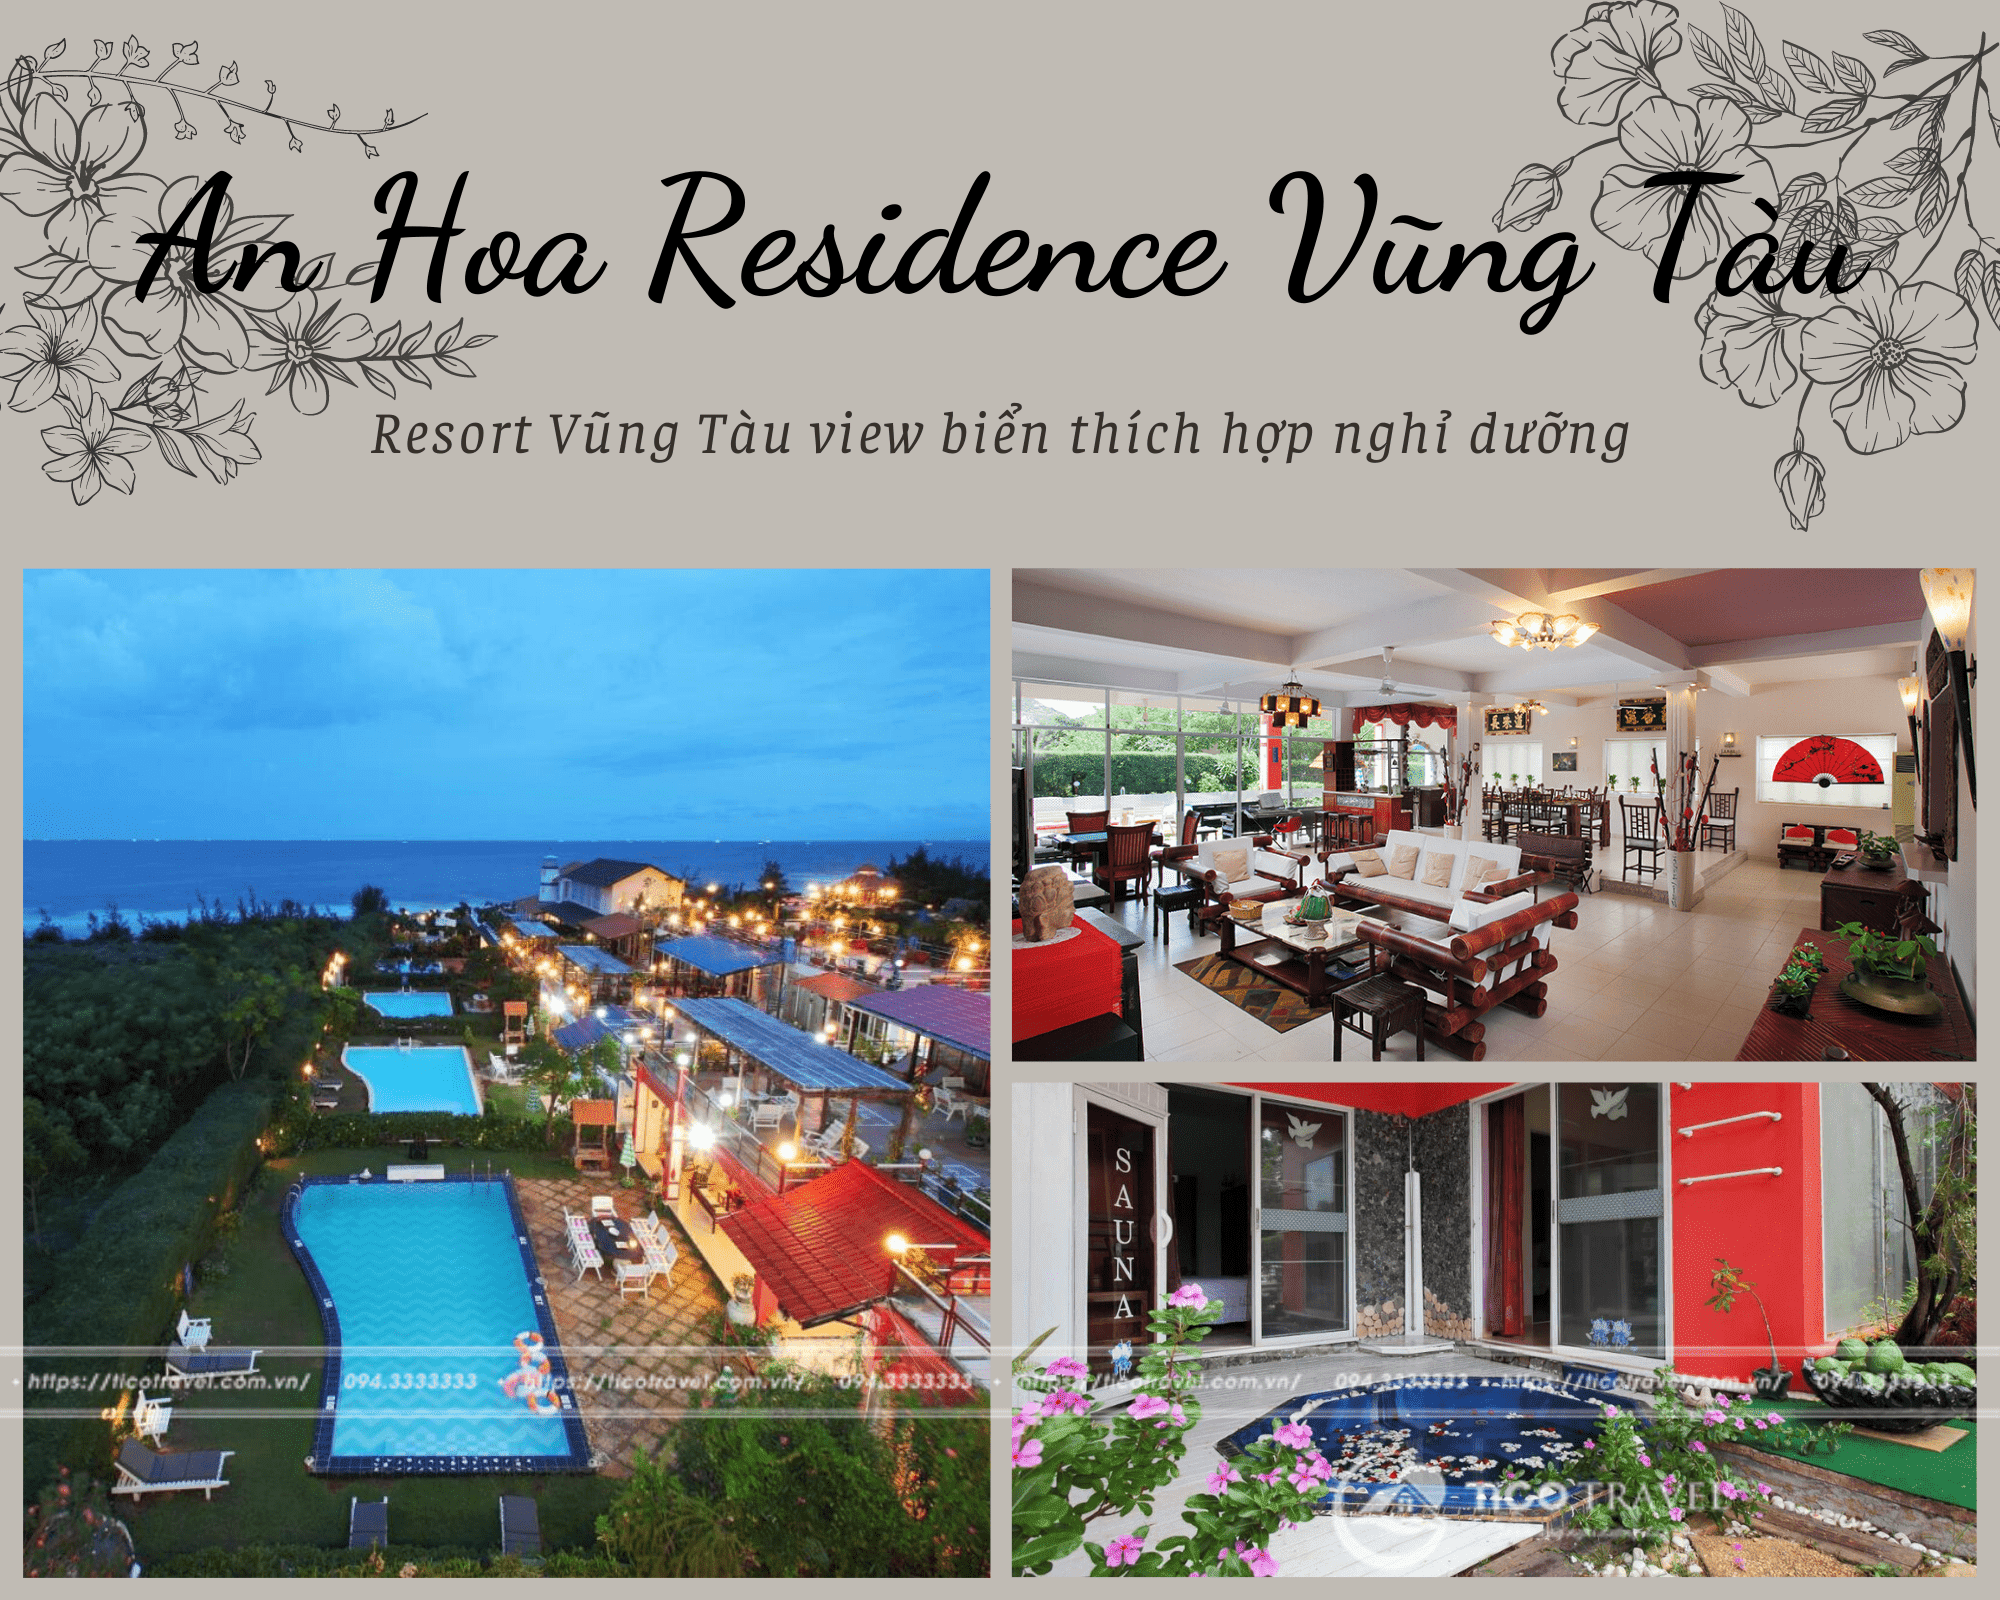 Resort Vũng Tàu view biển đẹp thích hợp nghỉ dưỡng